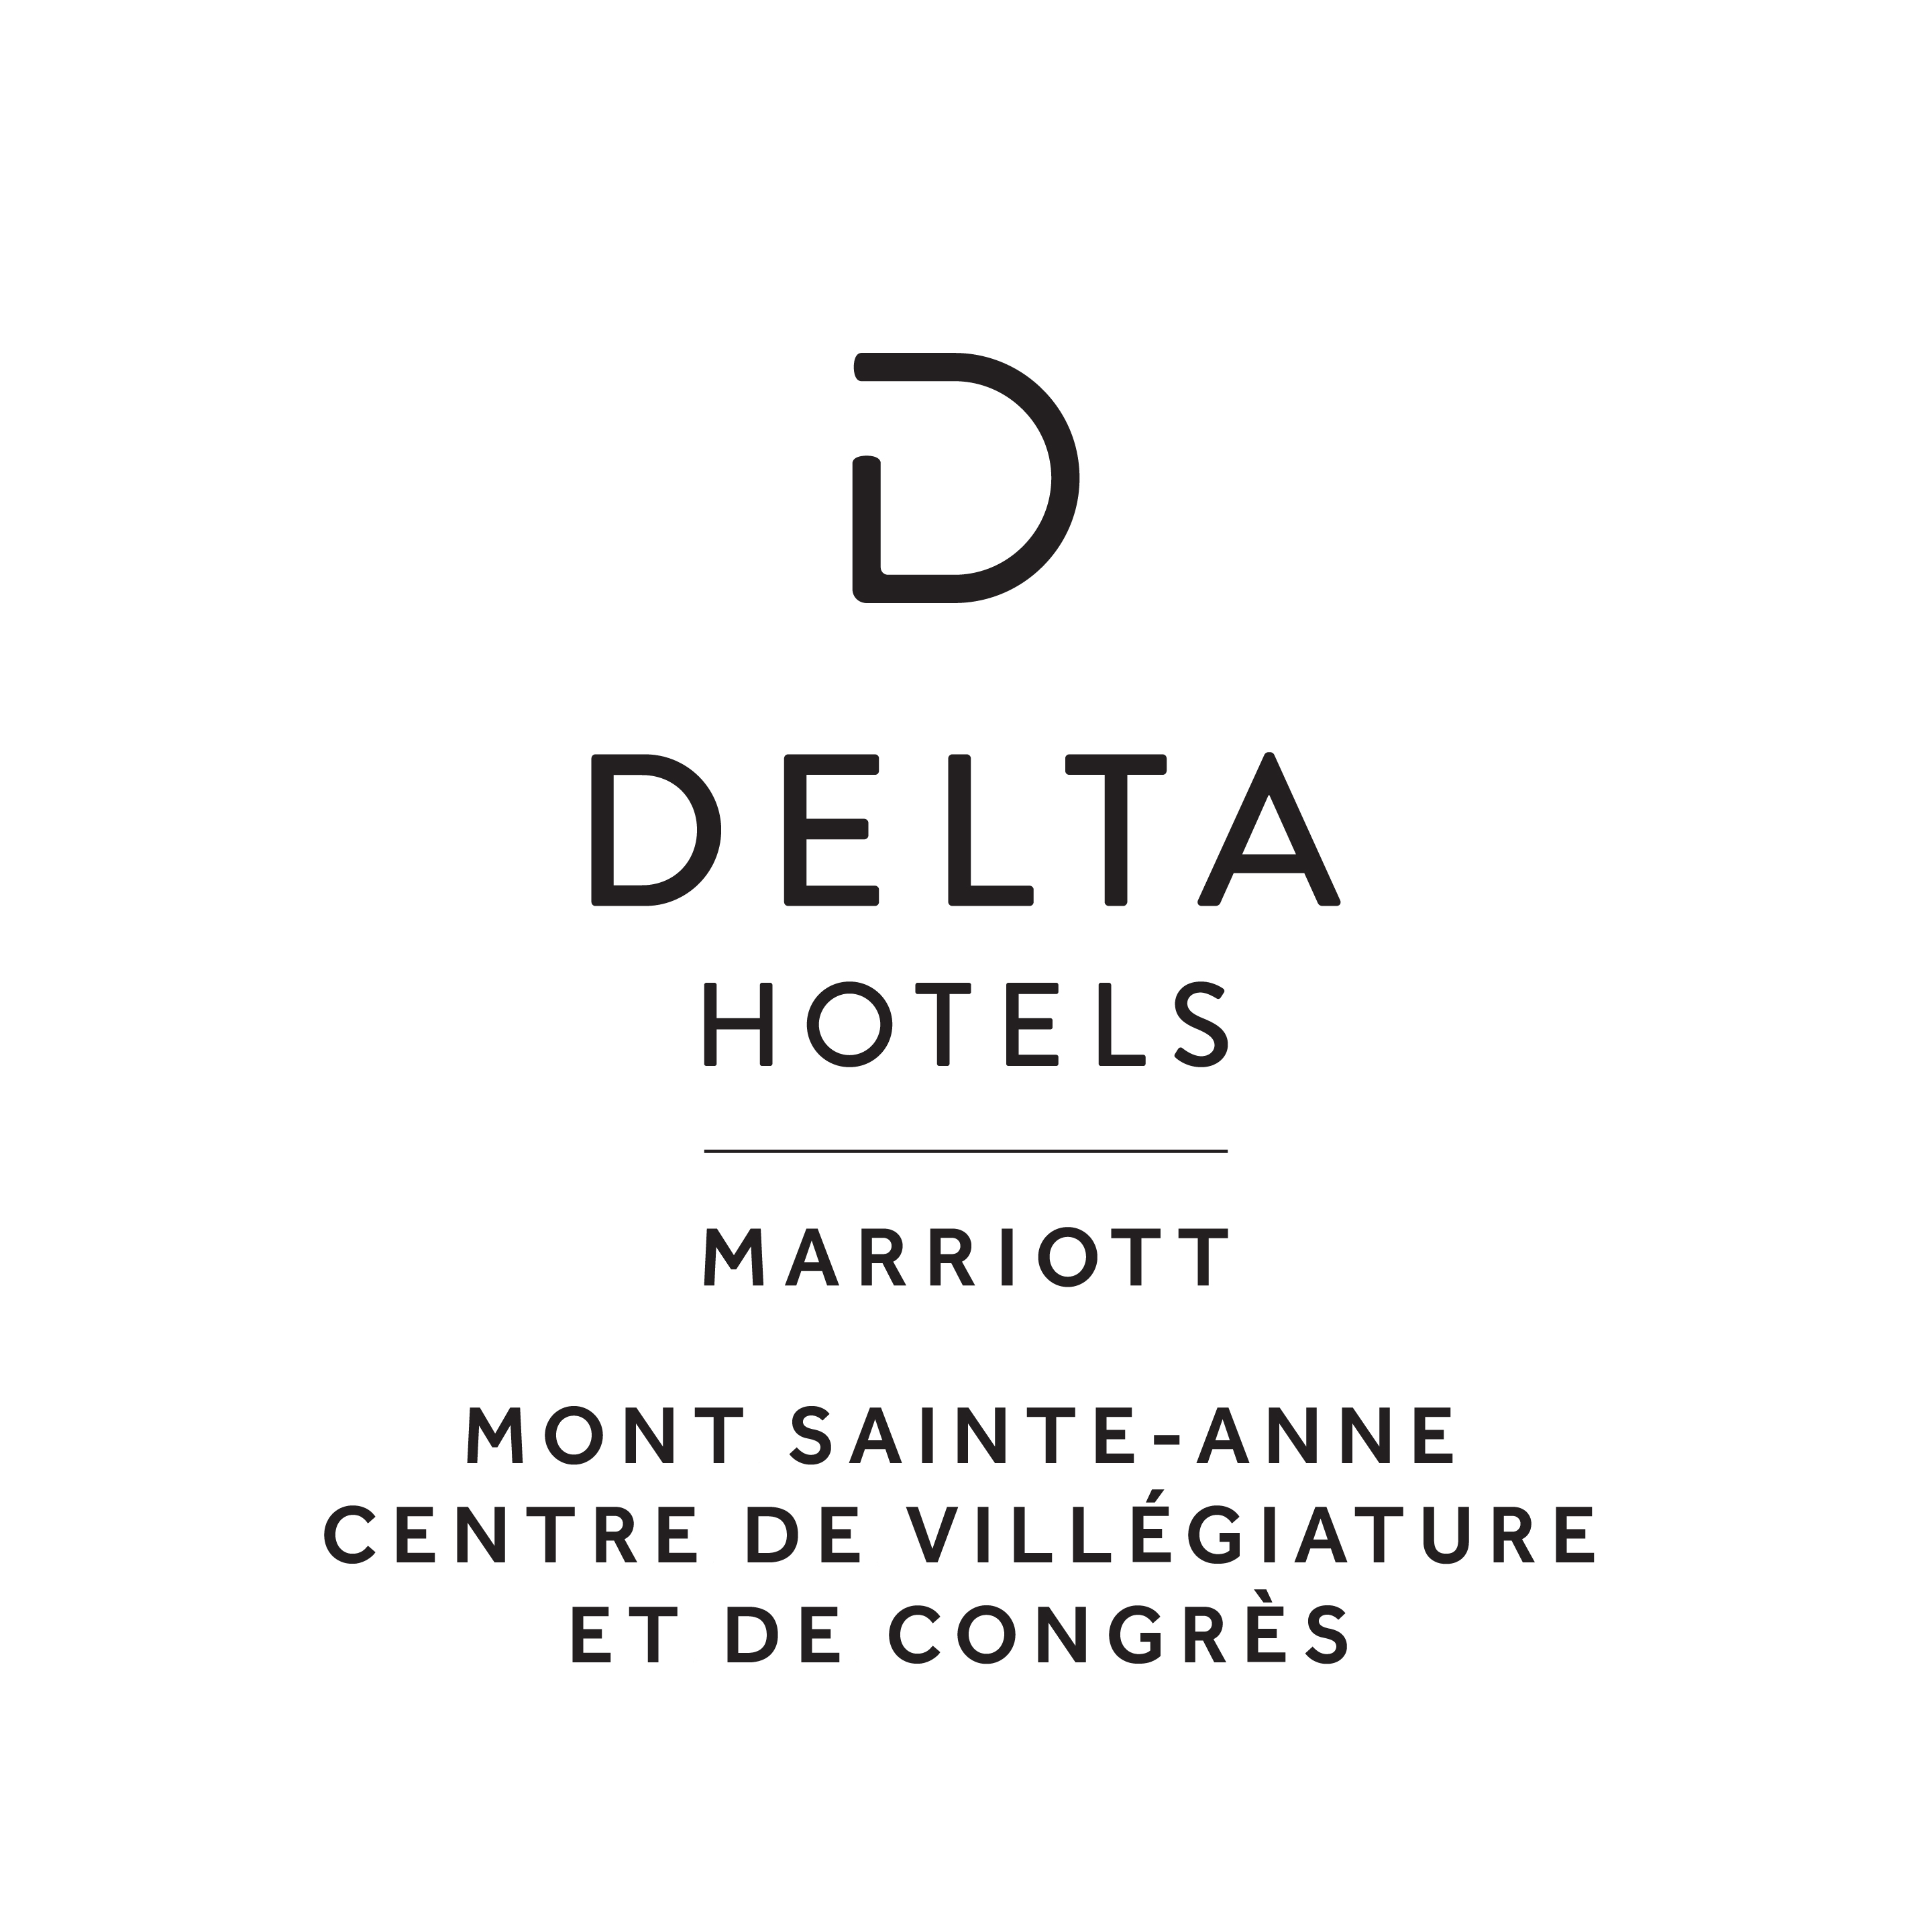 Delta Hotels Marriott Mont-Sainte-Anne, Centre de villégiature et congrès